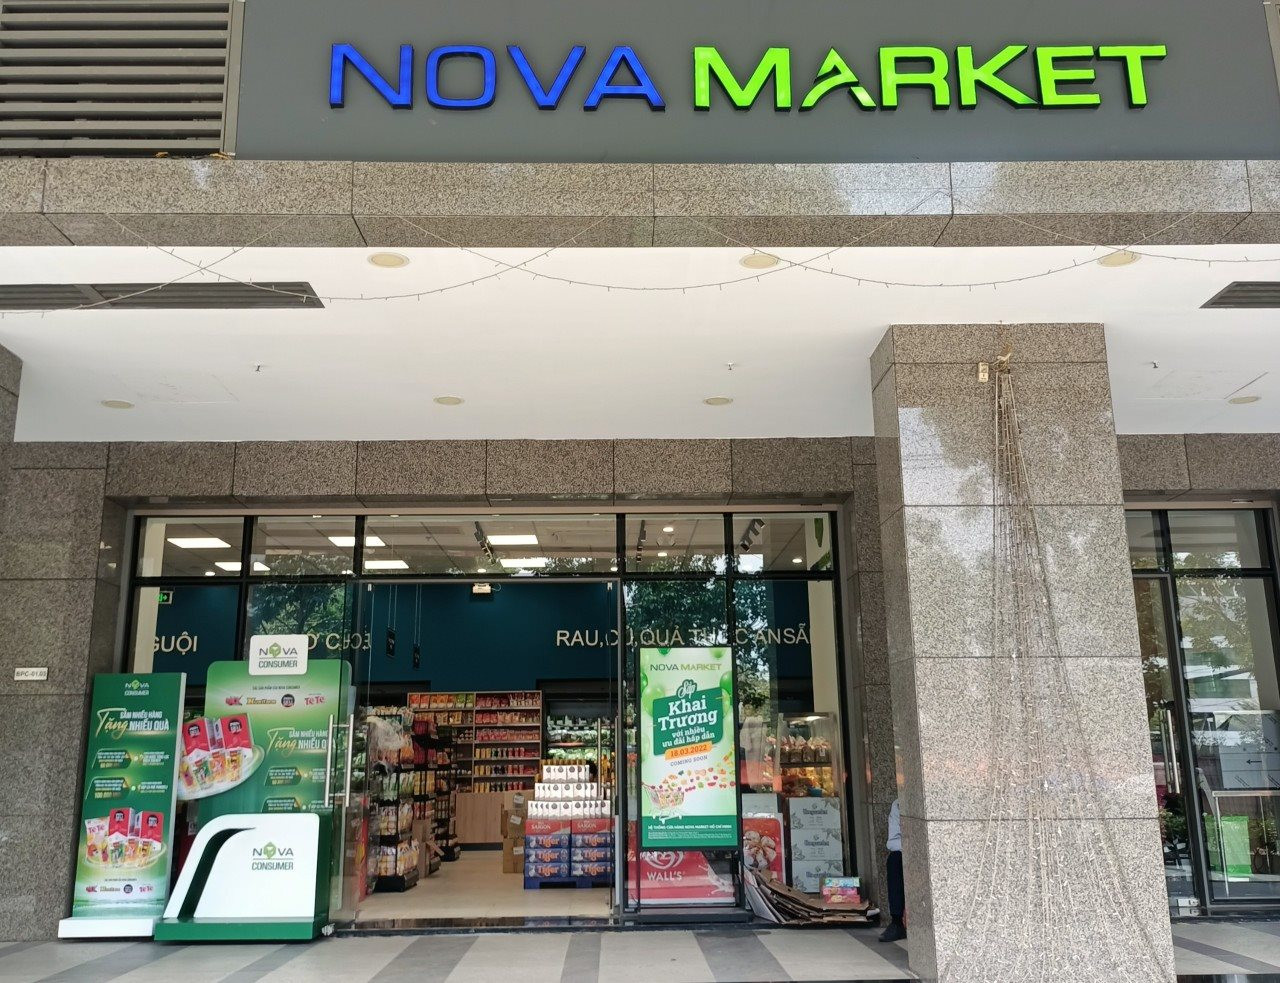 Quỹ tỷ USD thuộc VinaCapital dự phòng lớn cho khoản đầu tư vào Novaland, Nova Consumer - Ảnh 1.